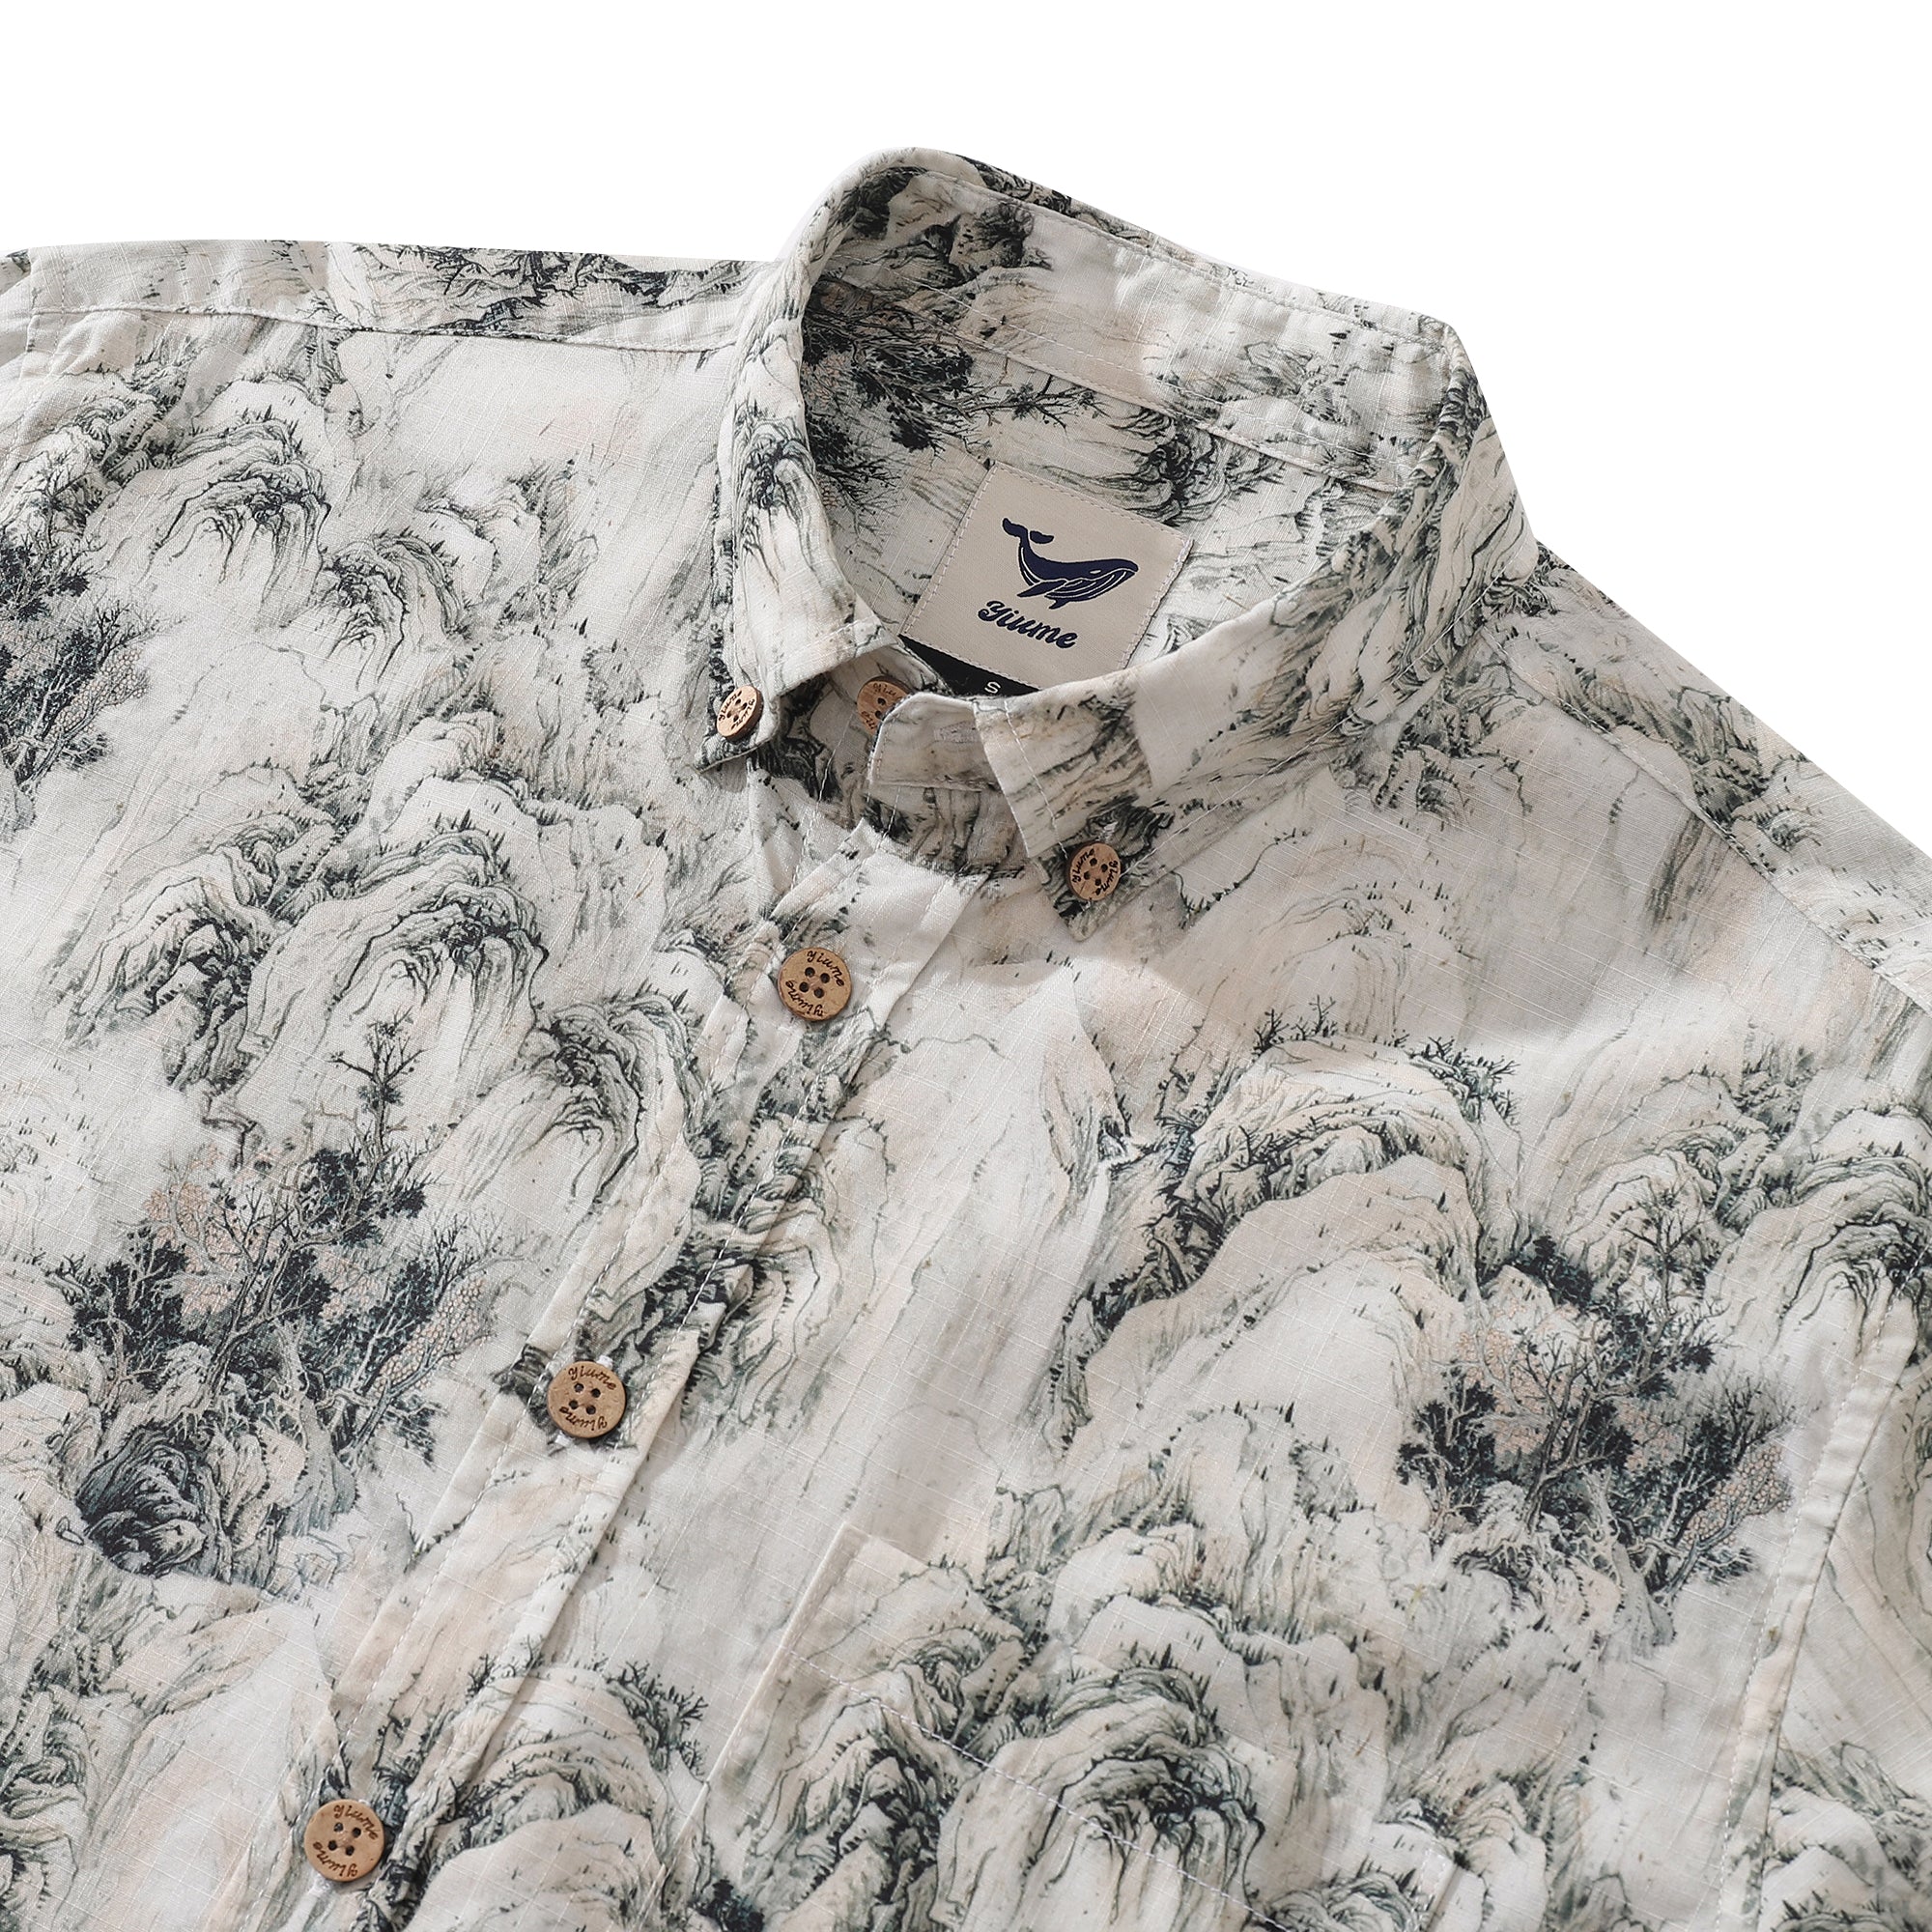 Men's Hawaiian Shirt Enchanting Mountain Landscape Cotton Button-down Long Sleeve Aloha Shirt